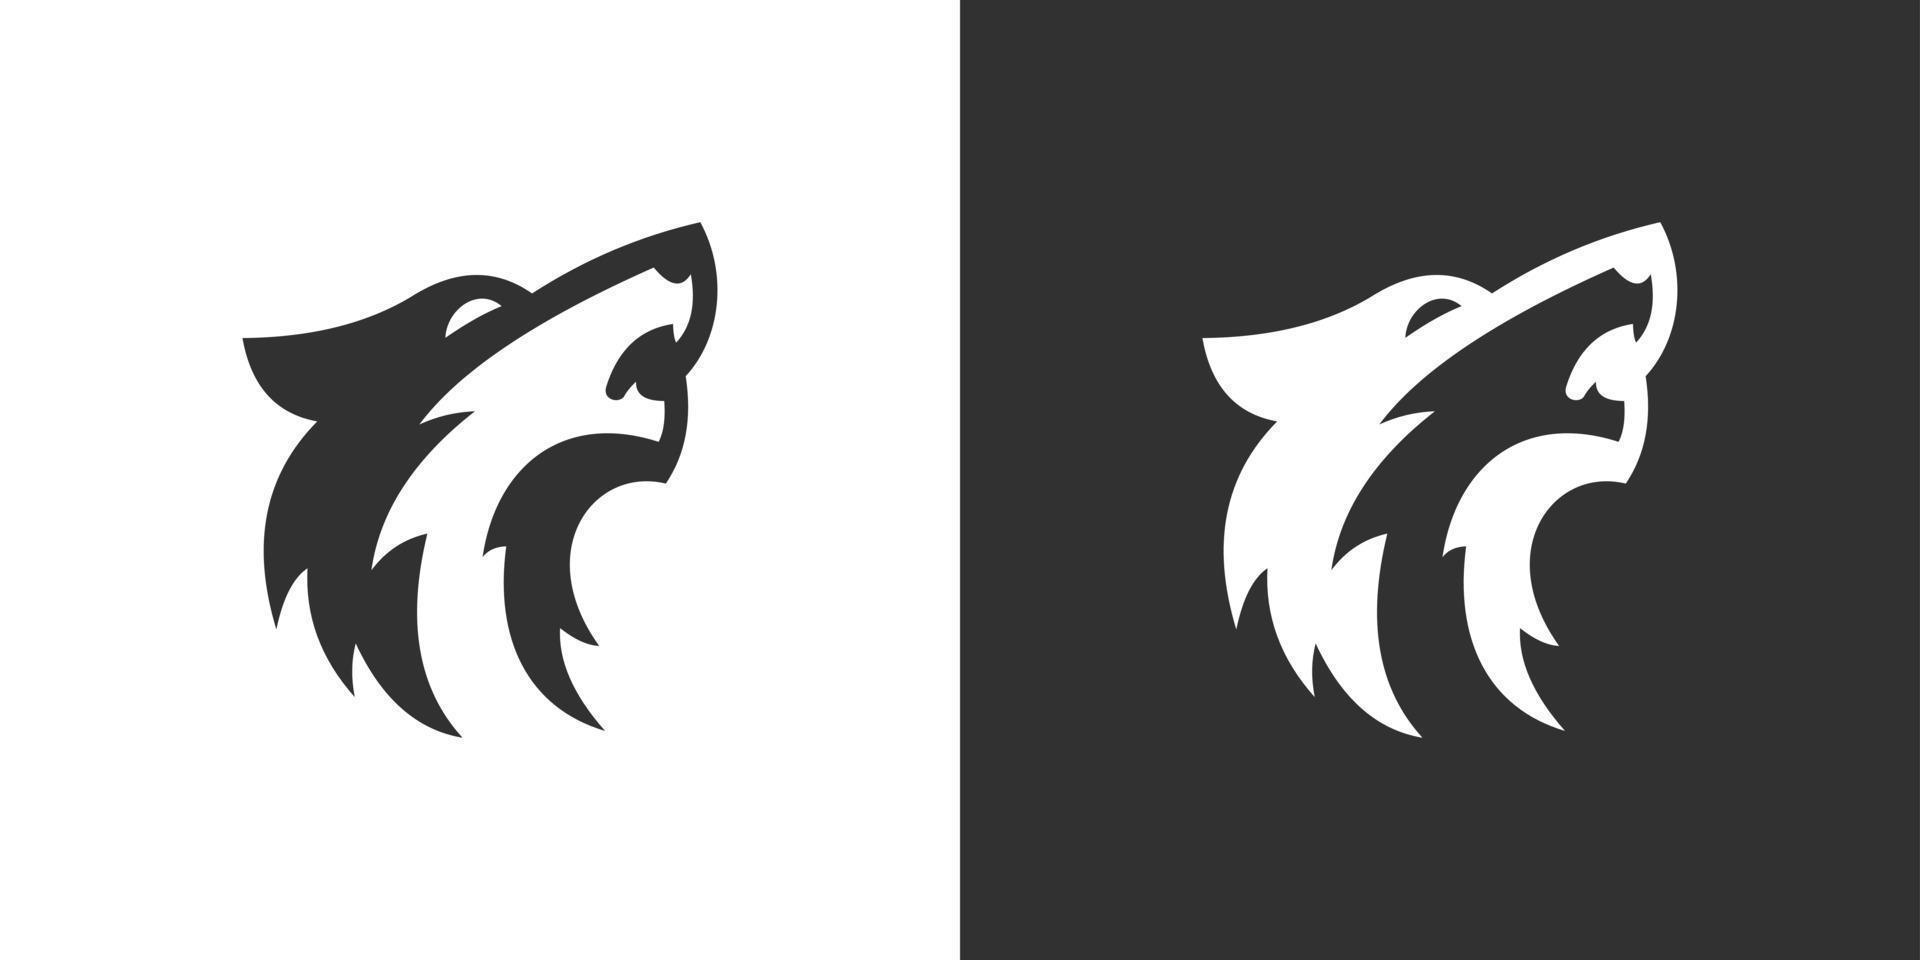 Wolf Head abstrakt vektor logotyp formgivningsmall.